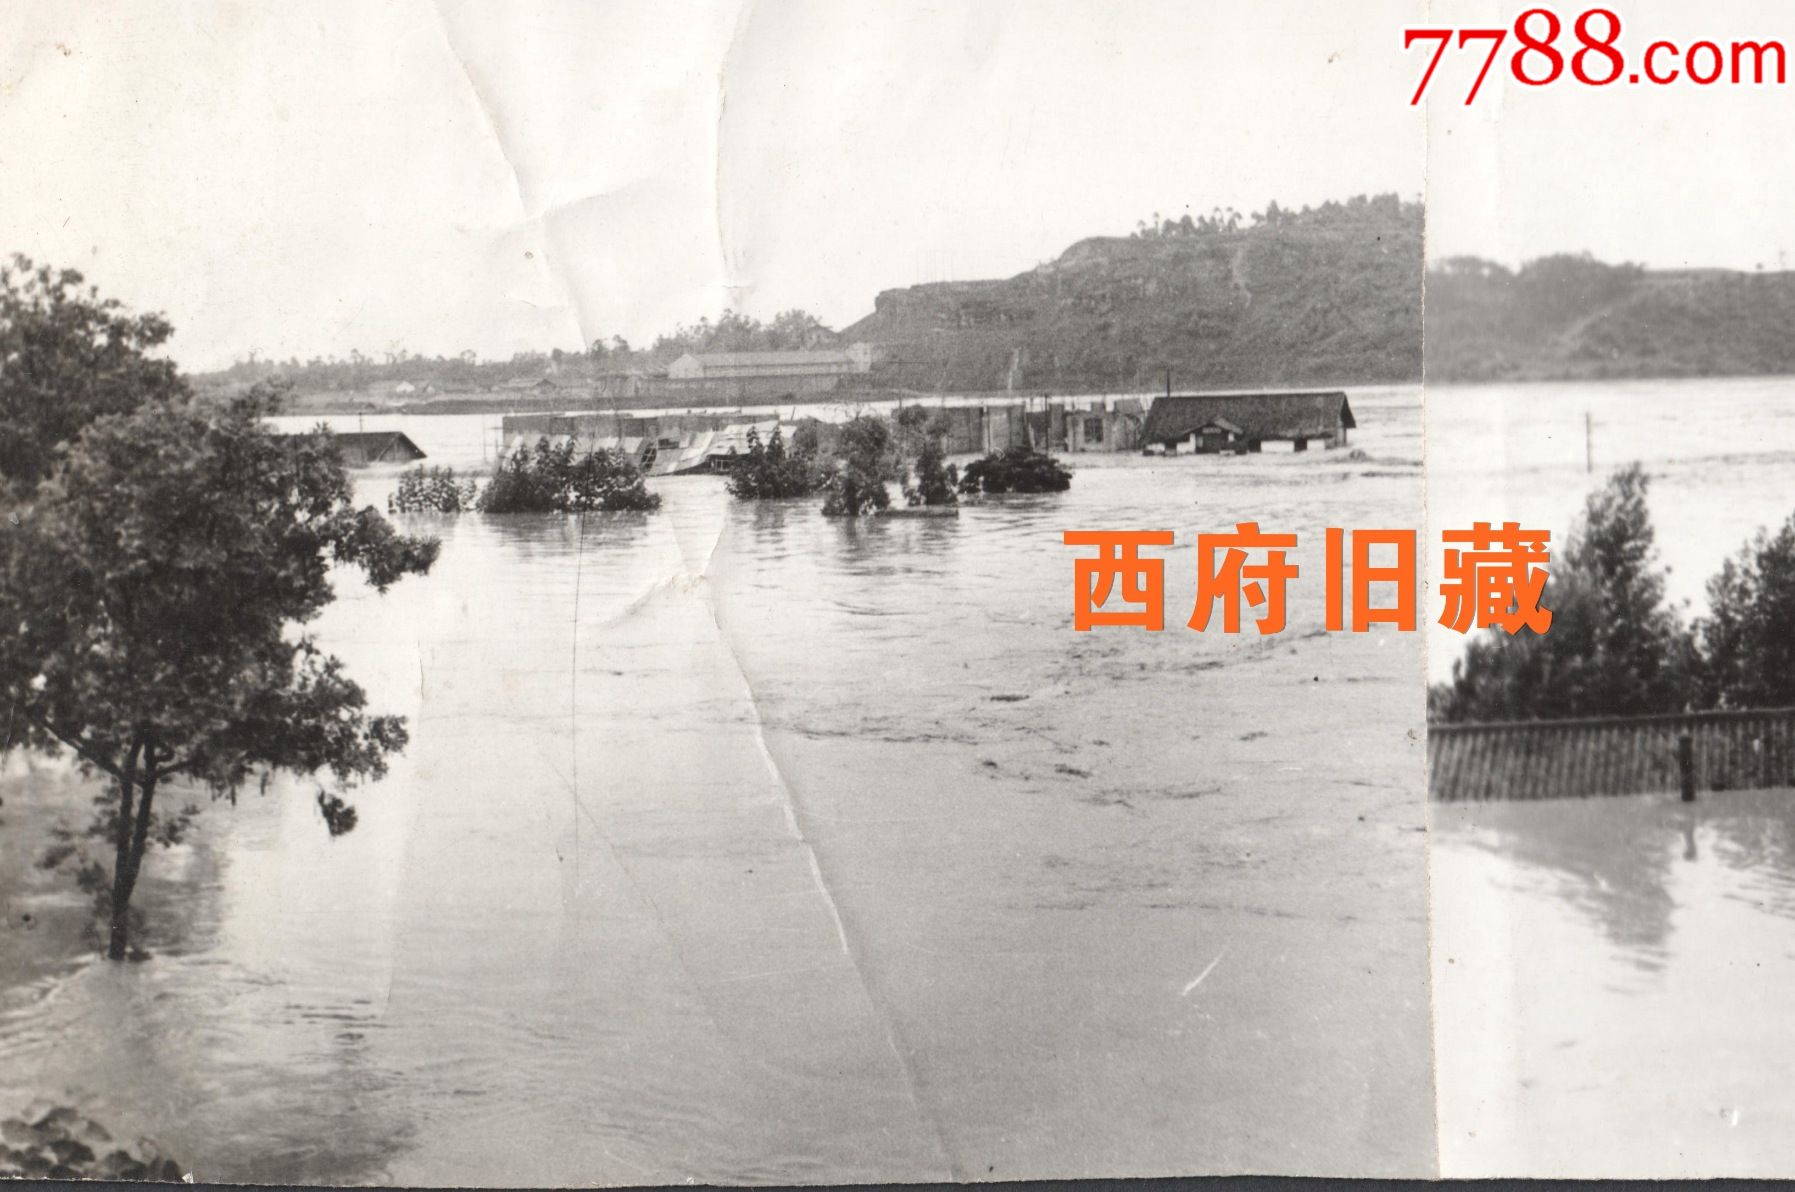 1981年,重庆潼南县遭遇百年一遇的洪水,淹没及洪水过境遗迹全景老照片